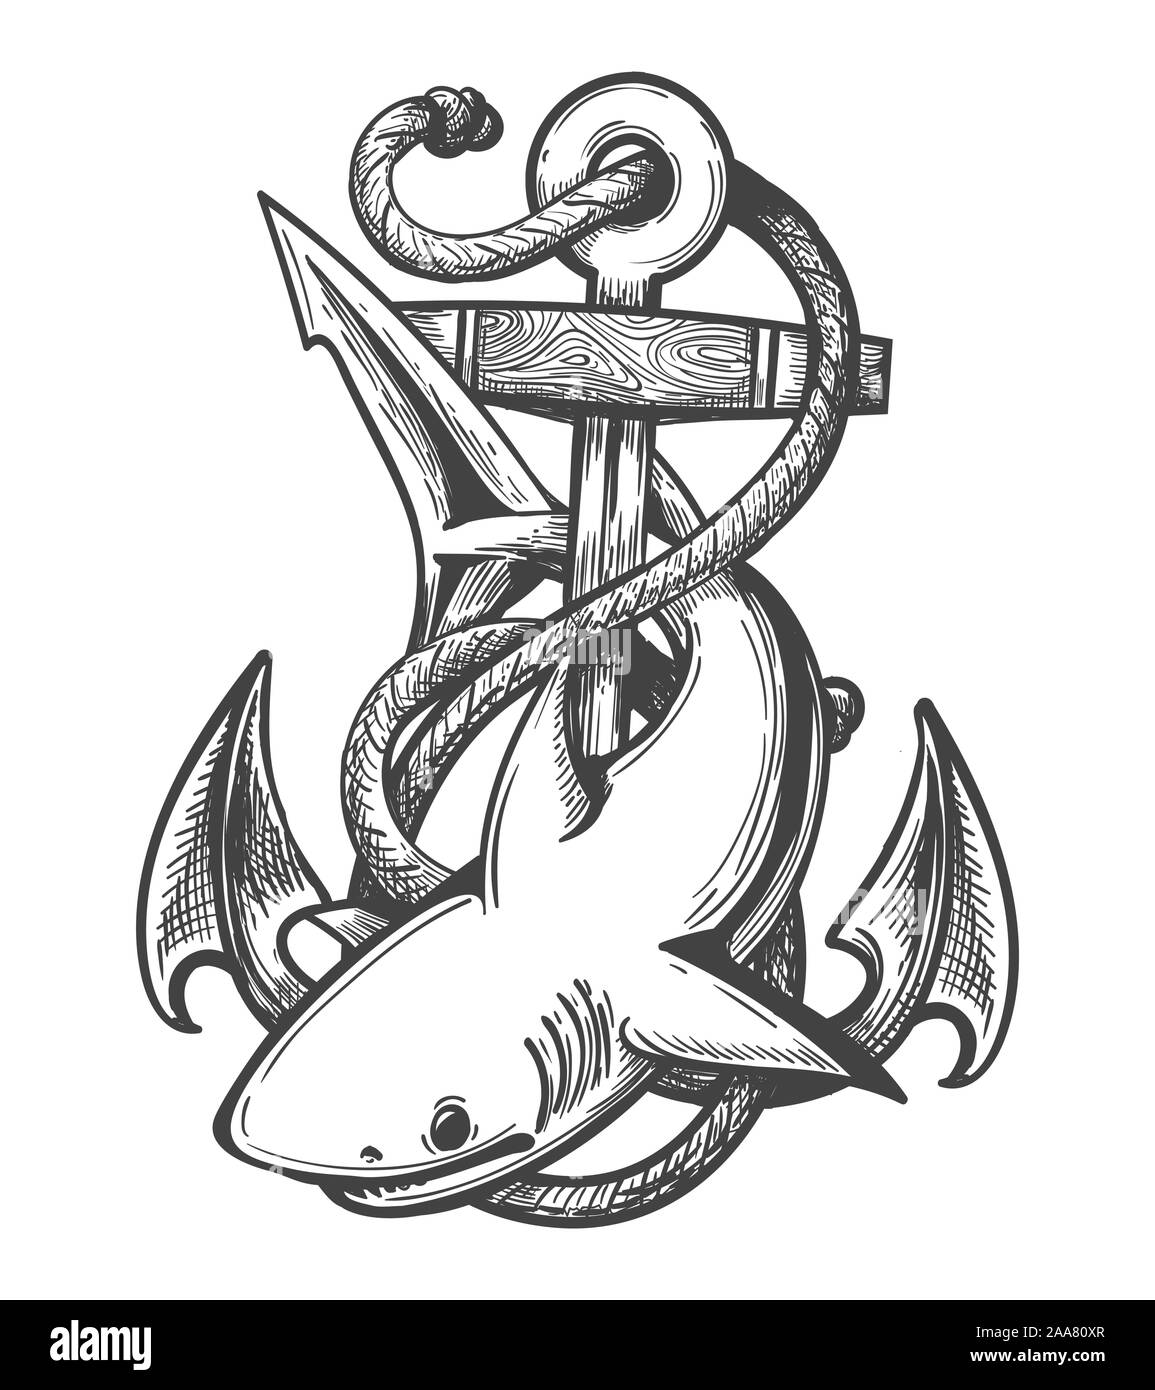 Emblema di squalo e il dispositivo di ancoraggio in Corde disegnati in stile tatuaggio. Vector illustartion. Illustrazione Vettoriale